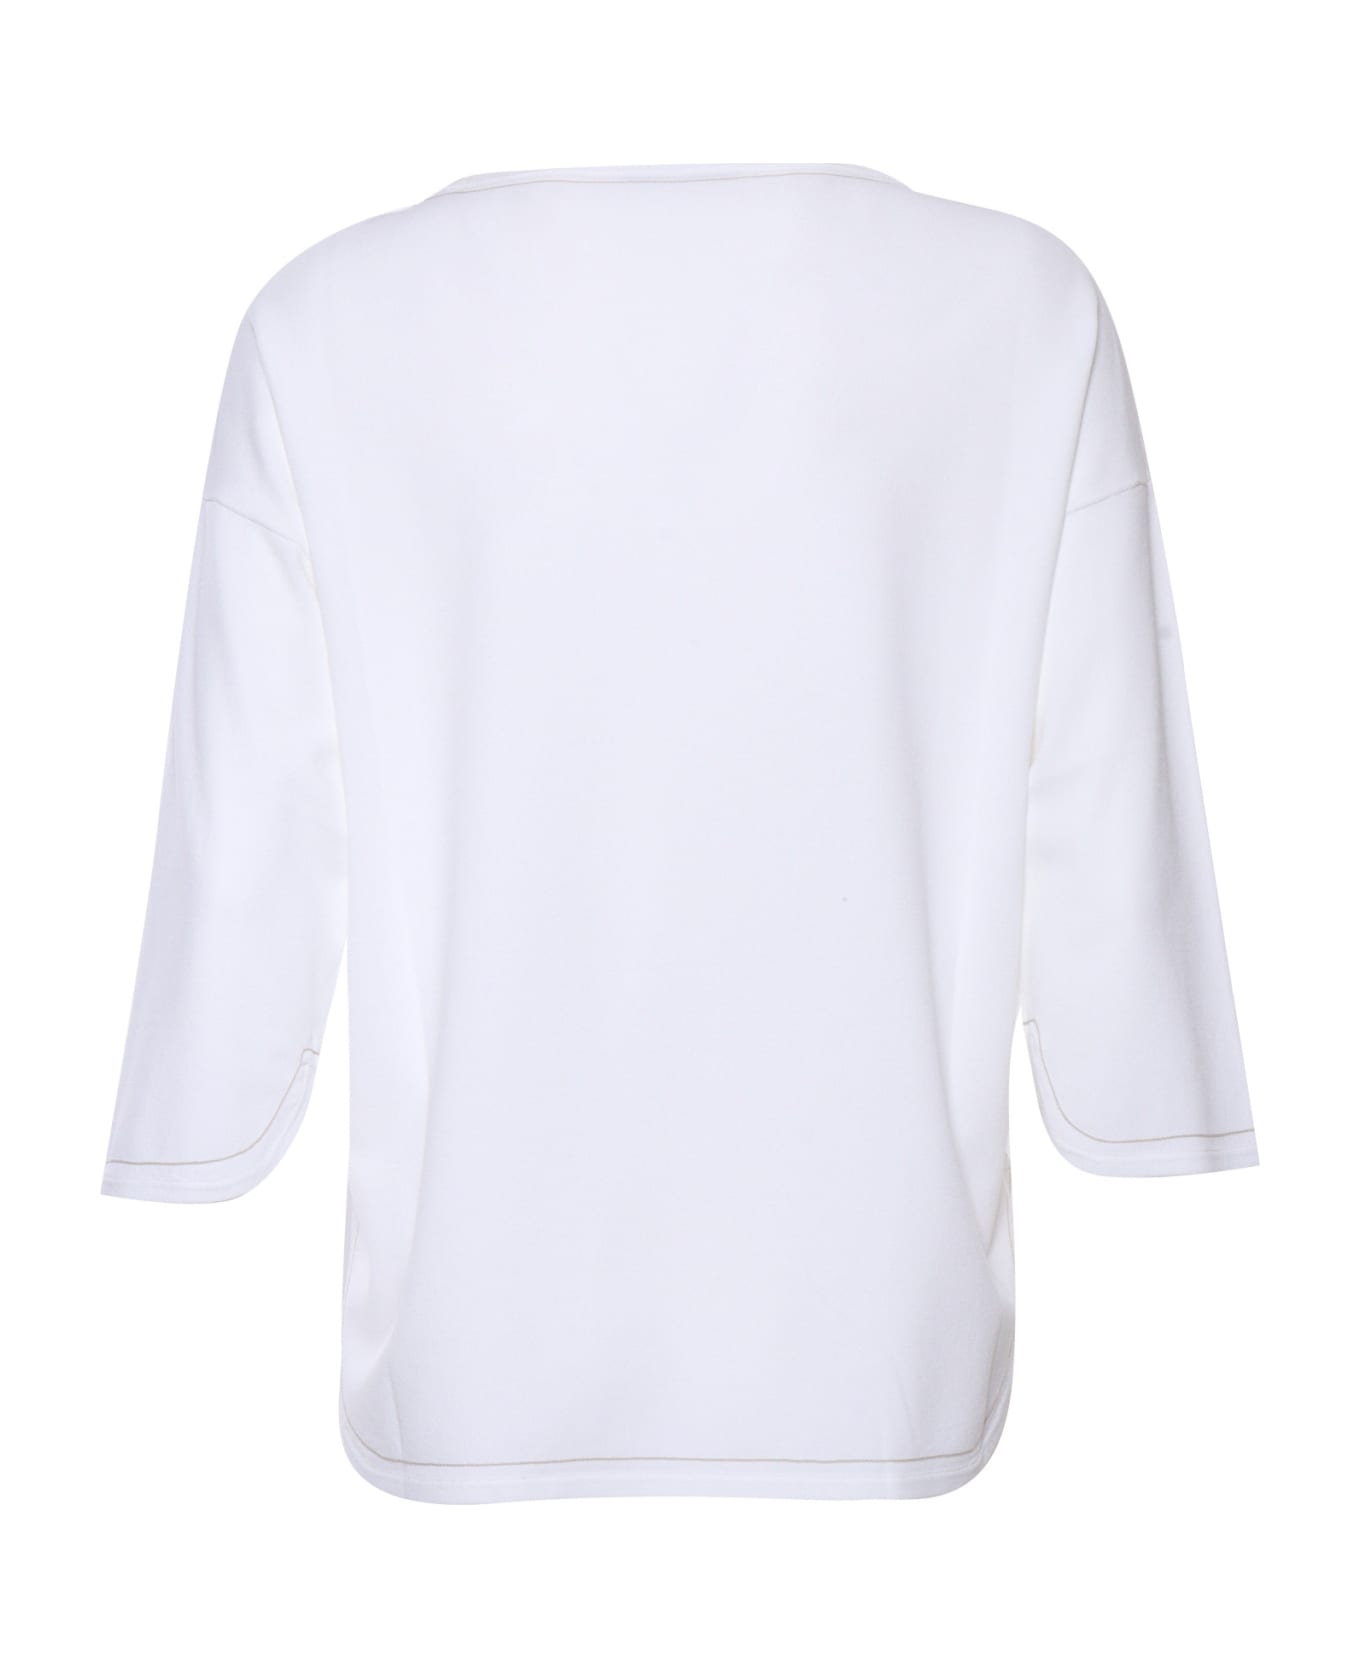 Kangra White Sweater - WHITE ニットウェア